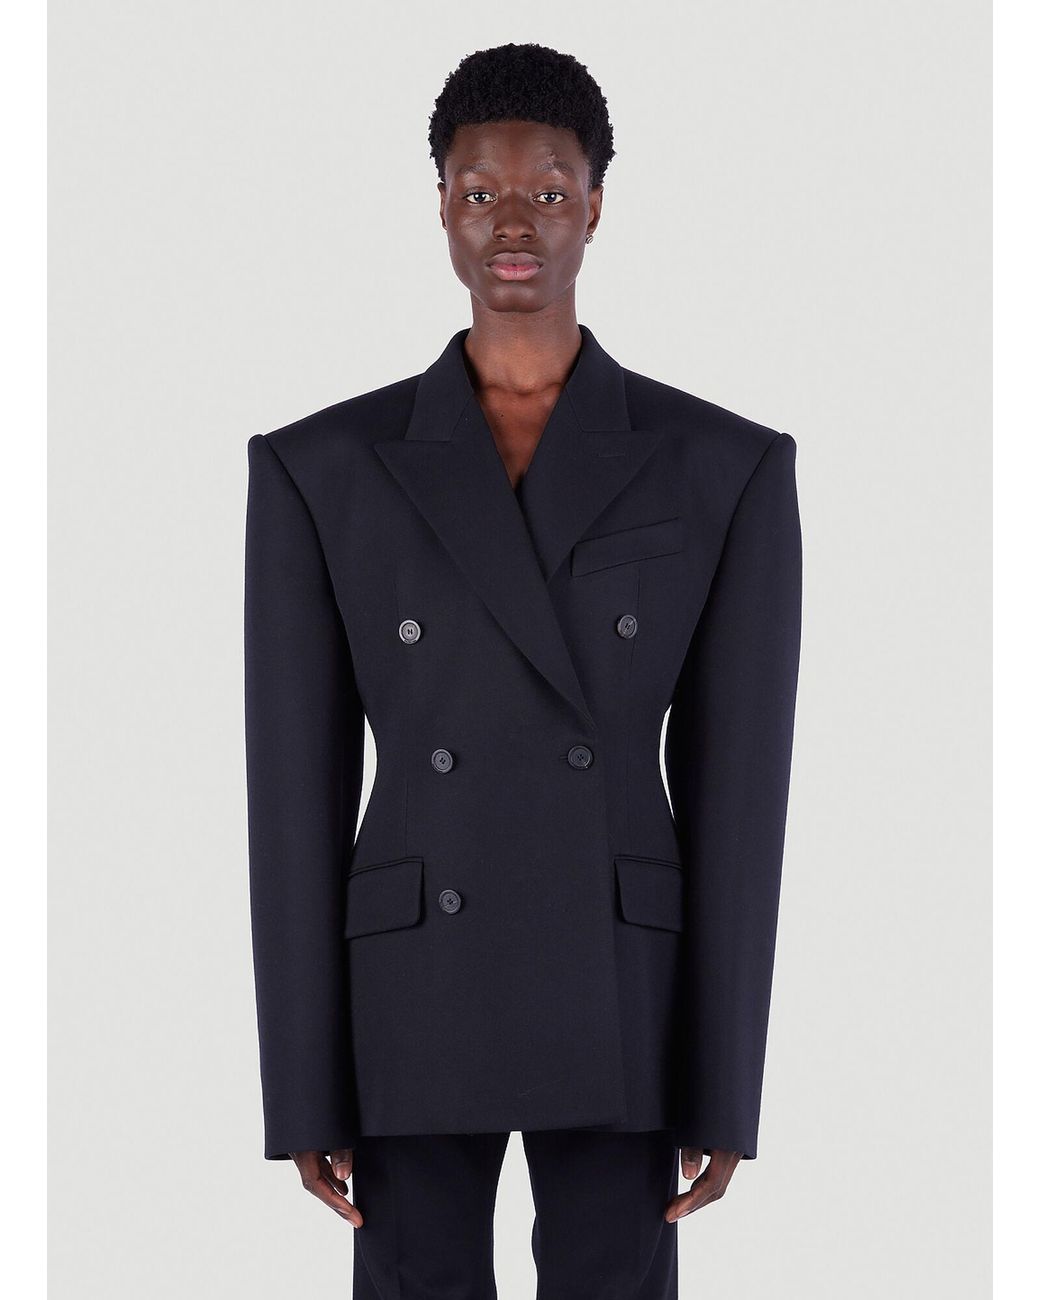 Balenciaga Wool Db Waisted Blazer in Black for Men | Lyst